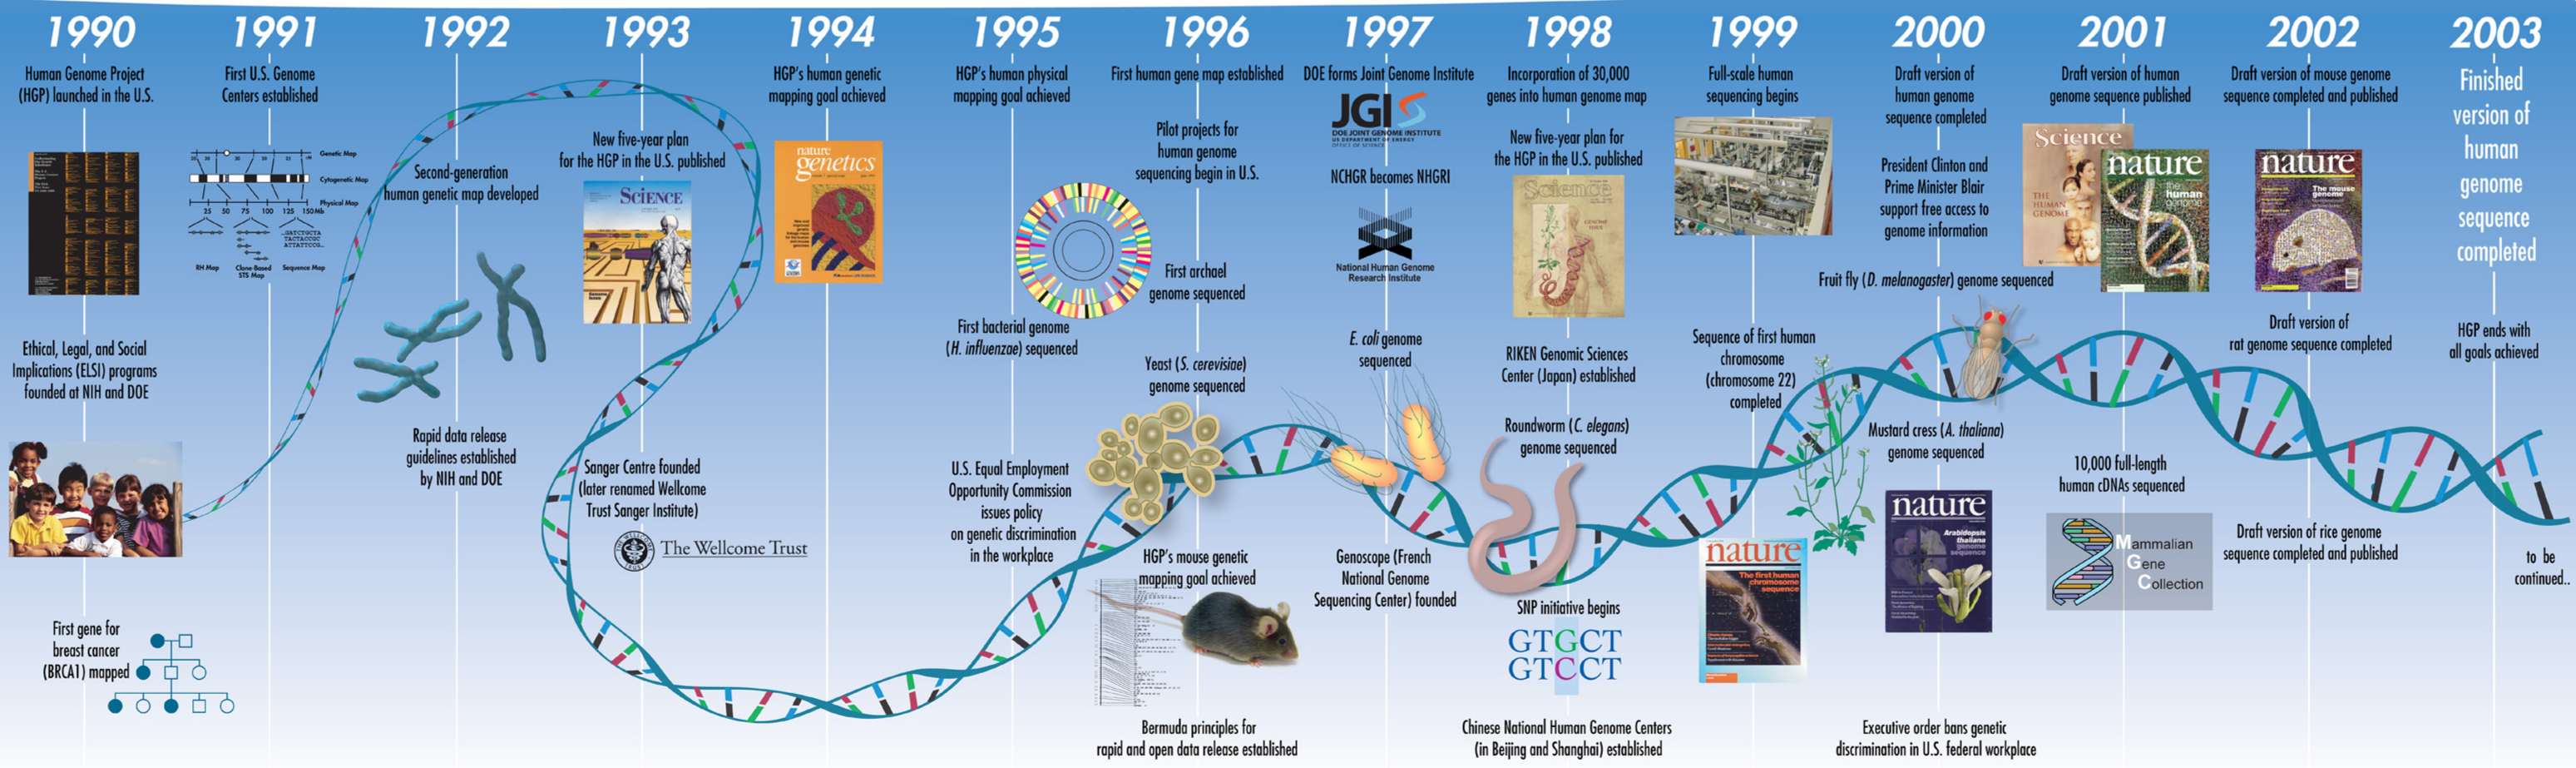 La imagen representa una línea temporal que comienza en 1990 con el inicio del Proyecto Genoma Humano y termina en 2003 con la secuenciación completa del genoma humano. Además muestra algunos de los avances en el campo de la genómica, los cuales han sido claves en el desarrollo de la tecnología usada en los test genéticos.